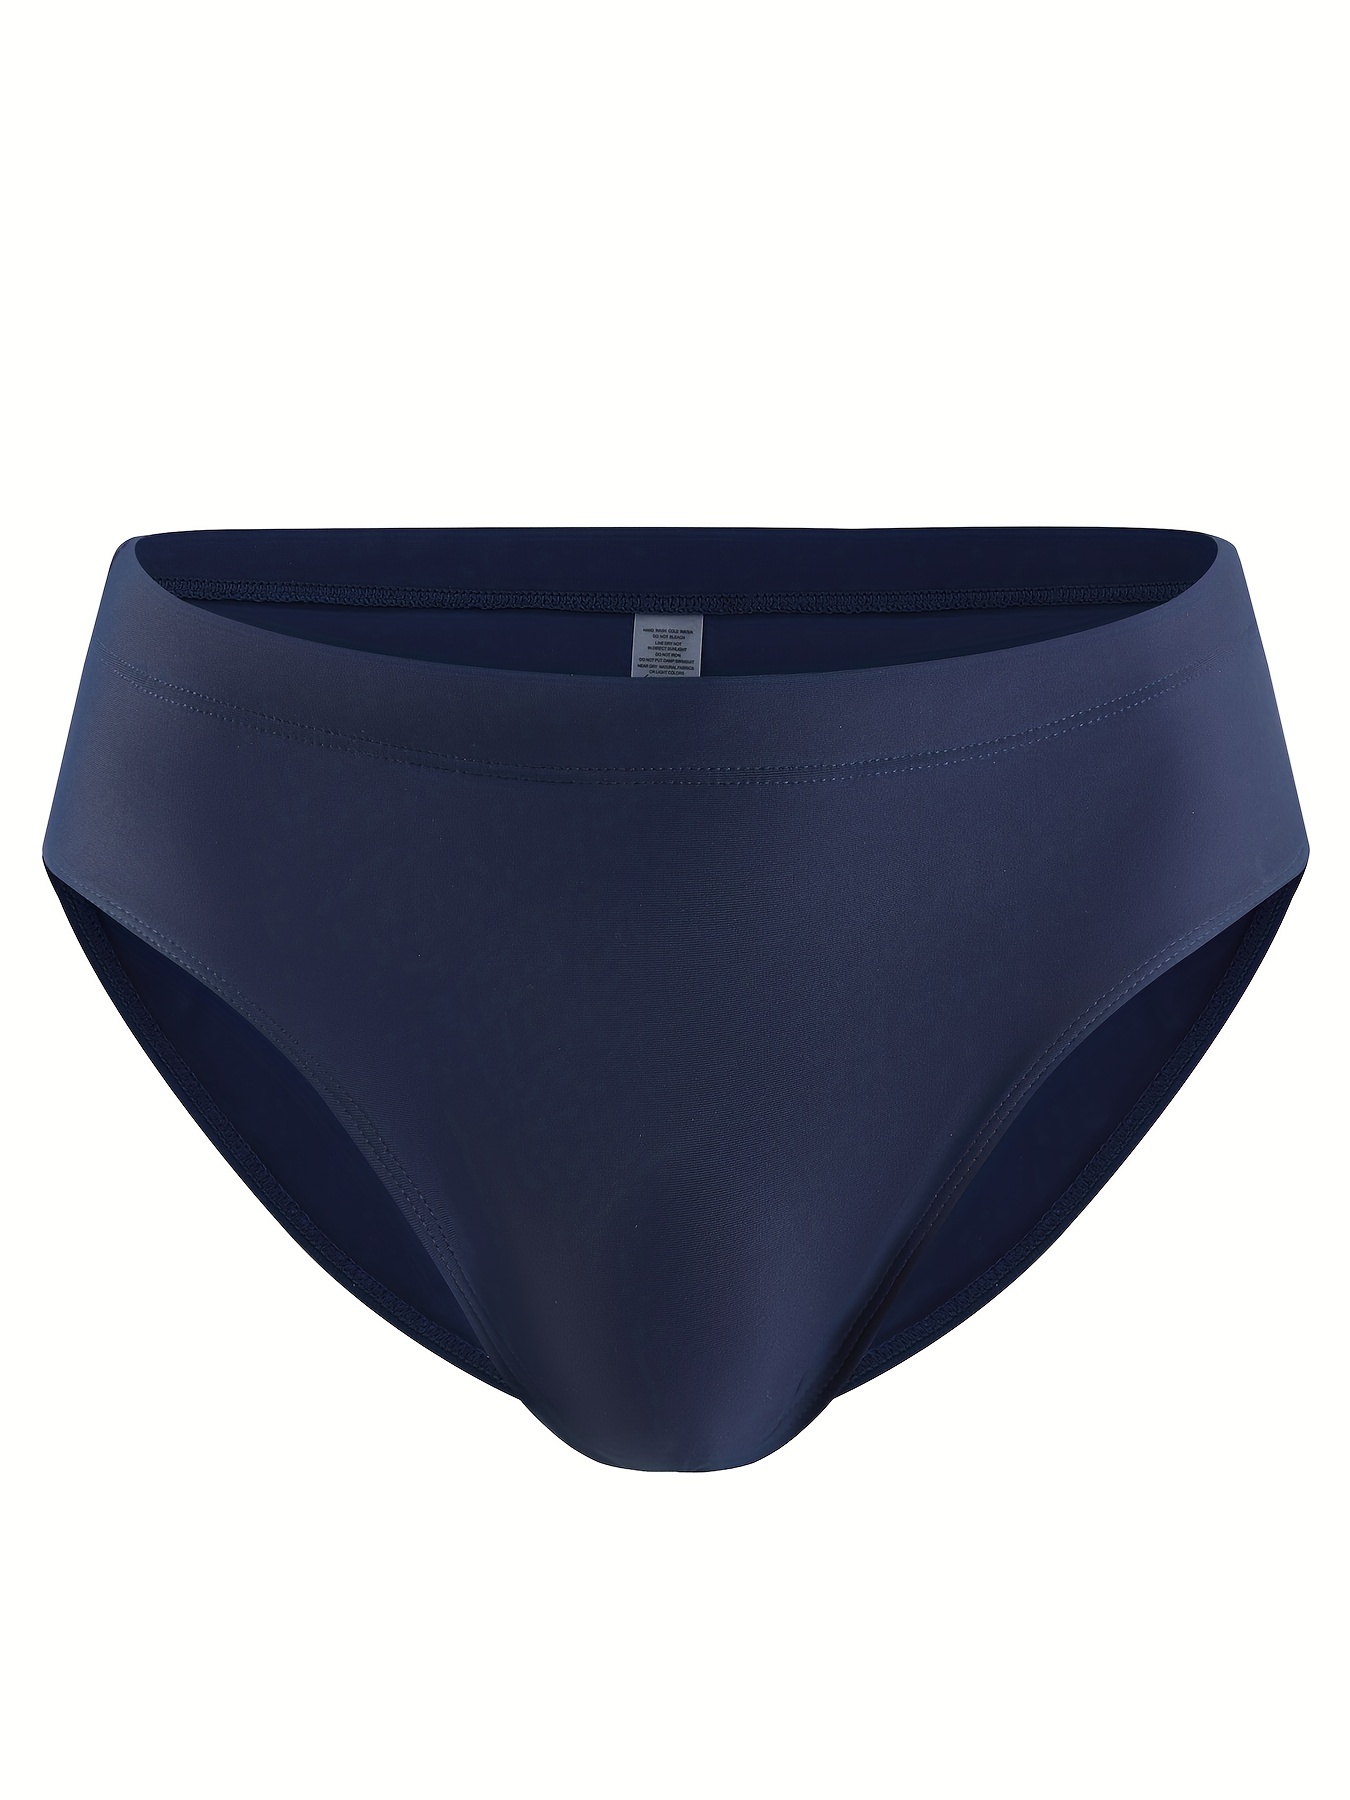 Mens Waterproof Swimming Briefs Solid Color Low Rise Panties Lingerie  Underwear 